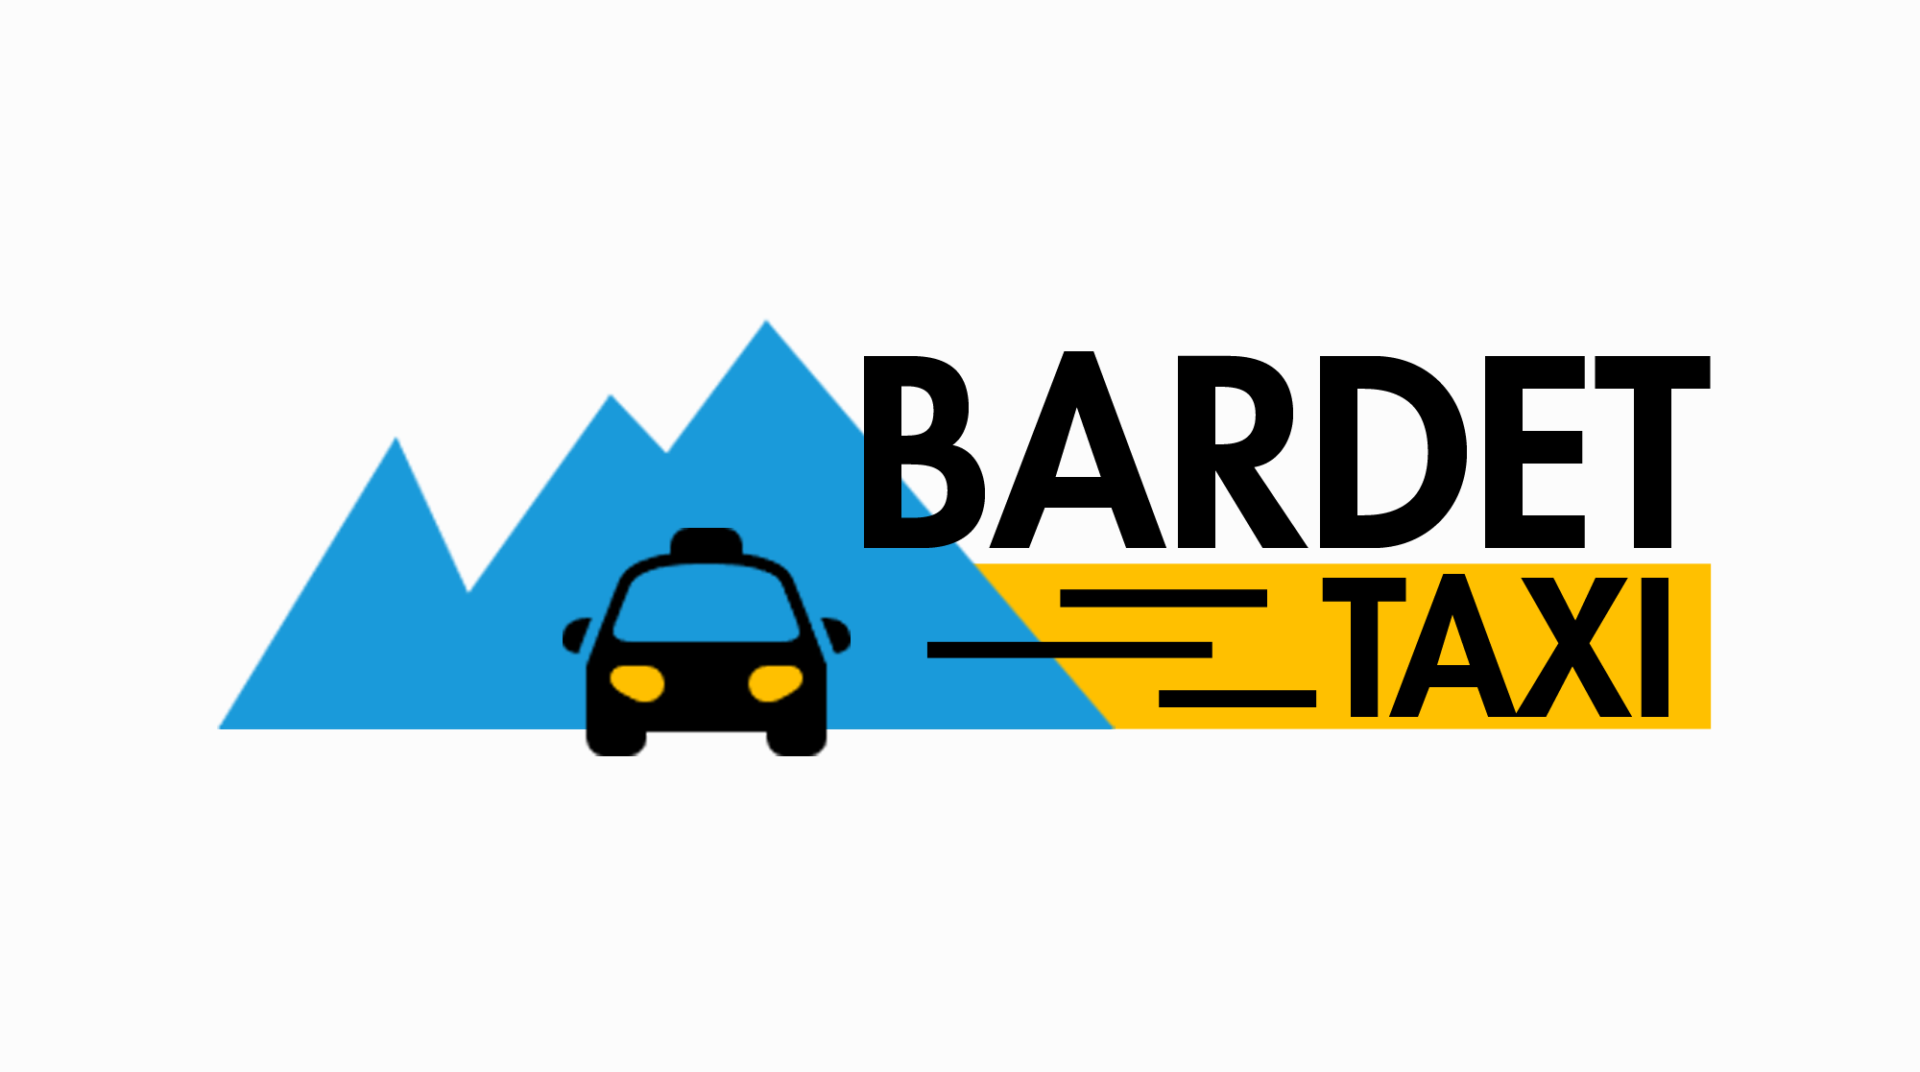 (c) Bardet-taxi.com